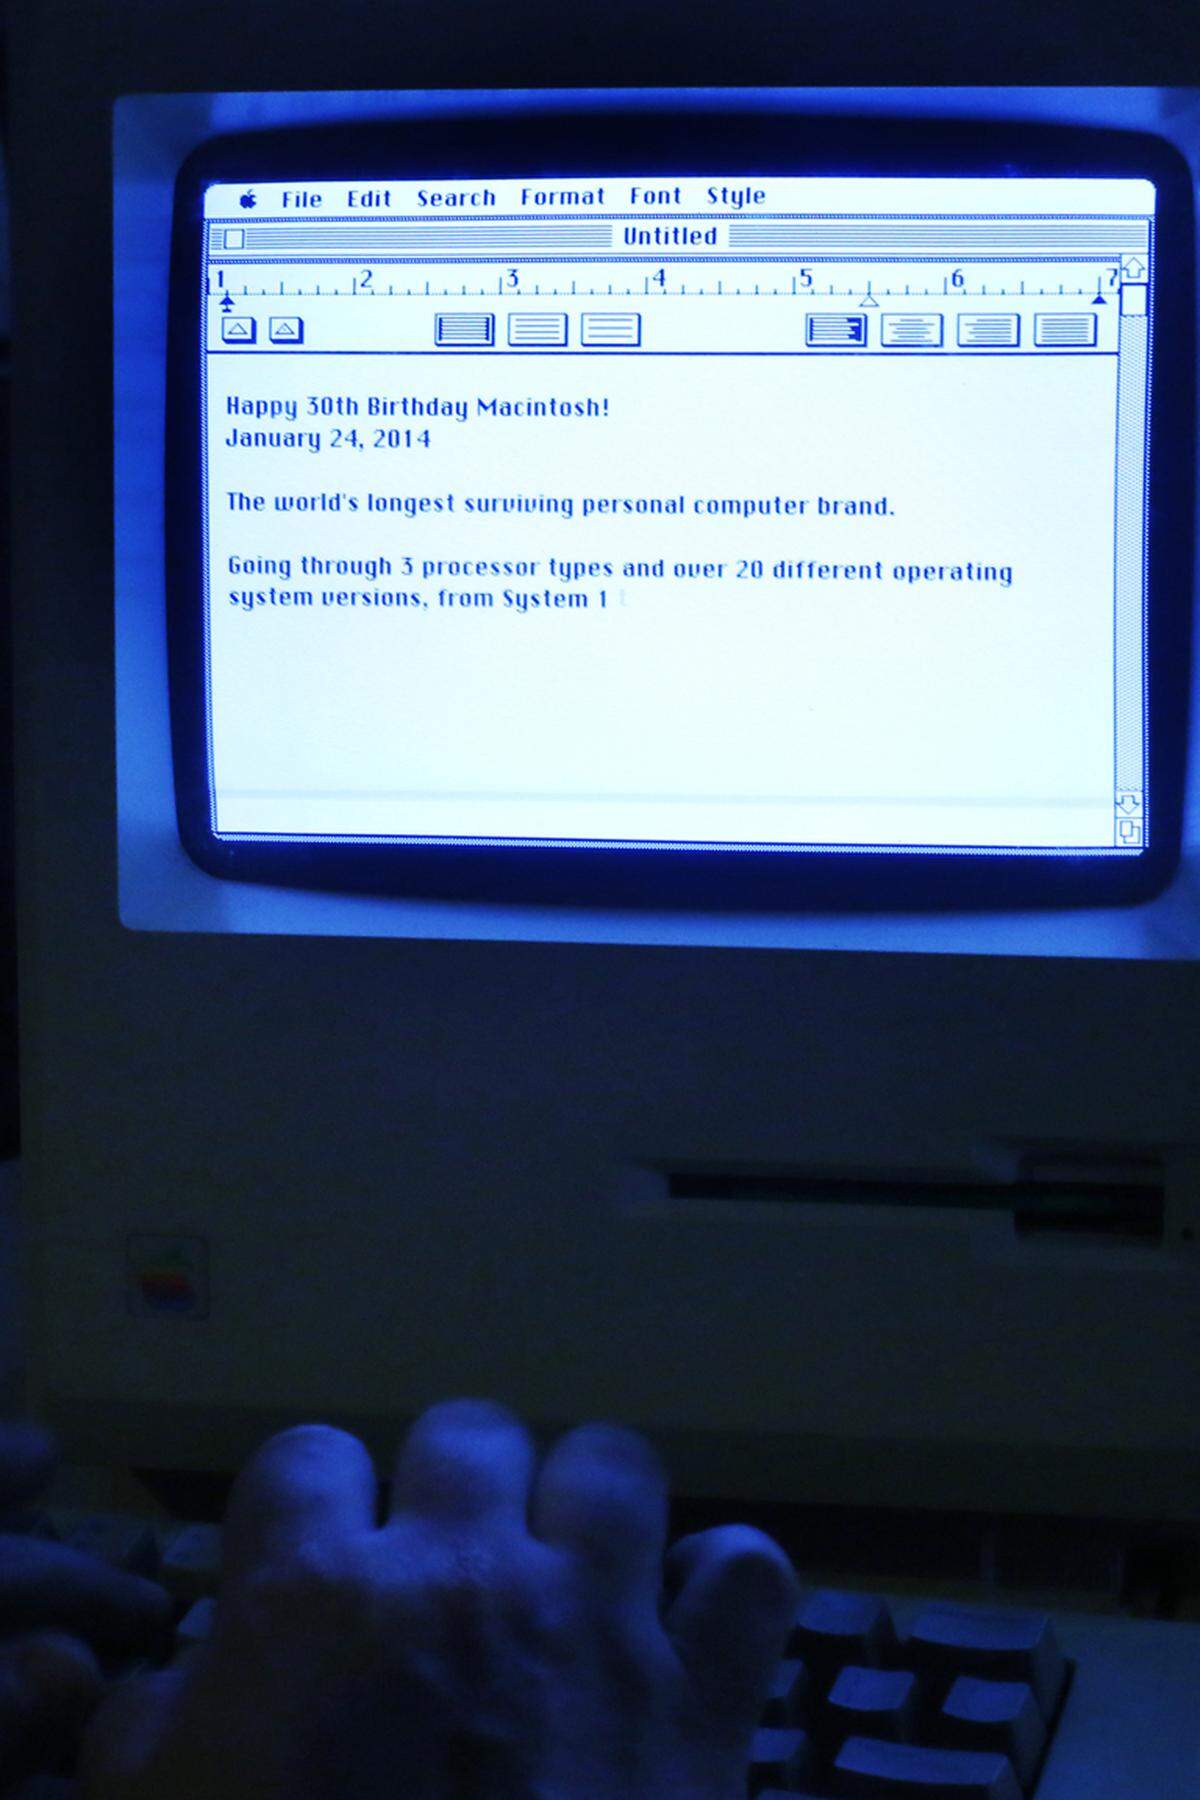 Der sprichwörtlichen kalifornischen Garage war Apple Anfang der 80er Jahre bereits längst entwachsen: Mit dem Apple II beherrschte damals das Unternehmen zunächst den noch jungen Markt der damaligen "Mikrocomputer". Doch Apple sollte nicht lange an der Spitze stehen: Die Karten wurden nämlich am 12. August 1981 neu gemischt, als der Computergigant IBM seinen IBM Personal Computer auf den Markt warf.